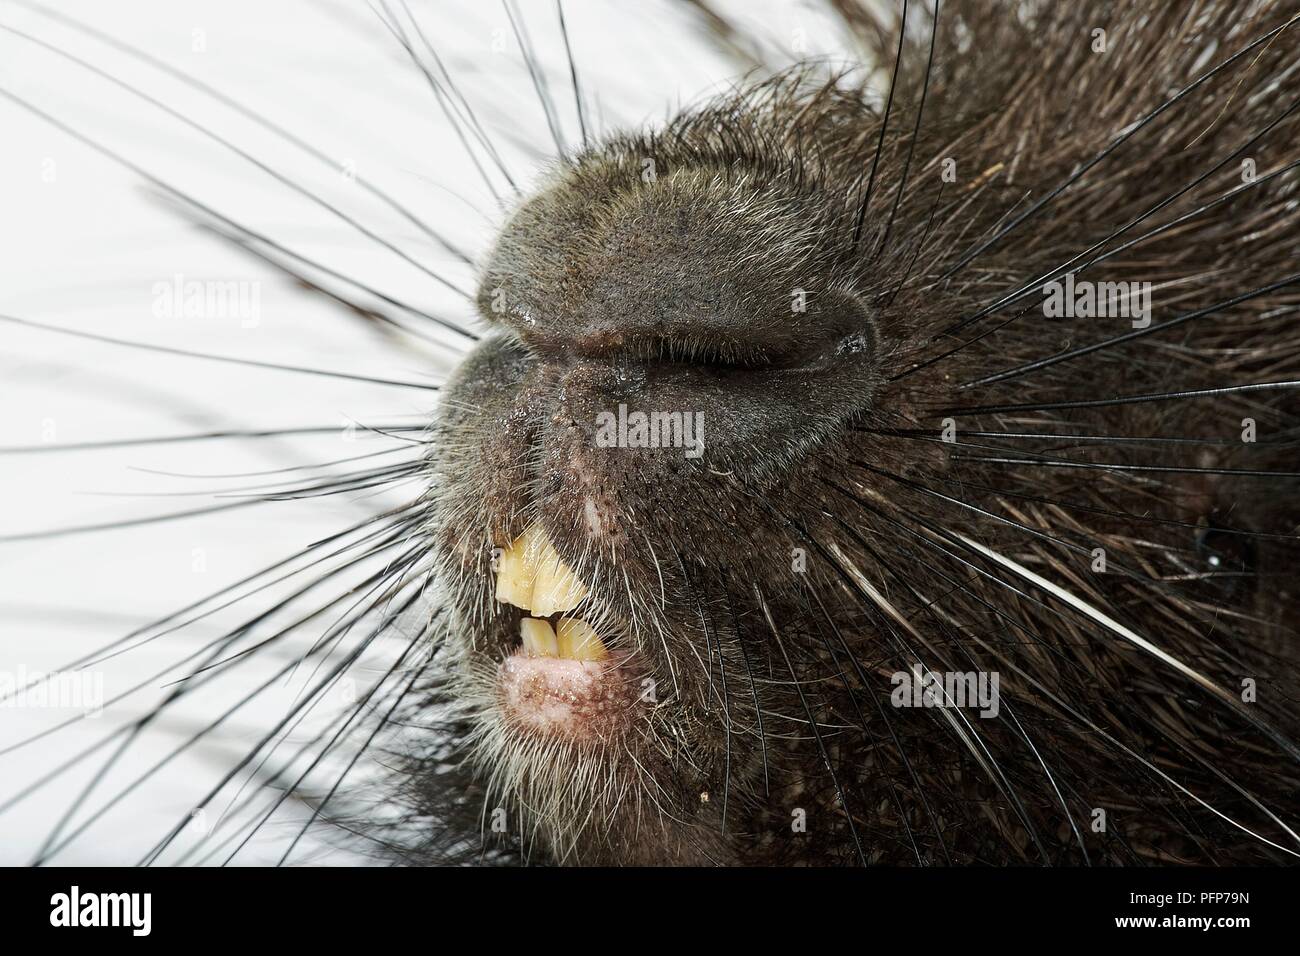 Porc-épic (Hystrix cristata), close-up sur le nez et des dents Banque D'Images